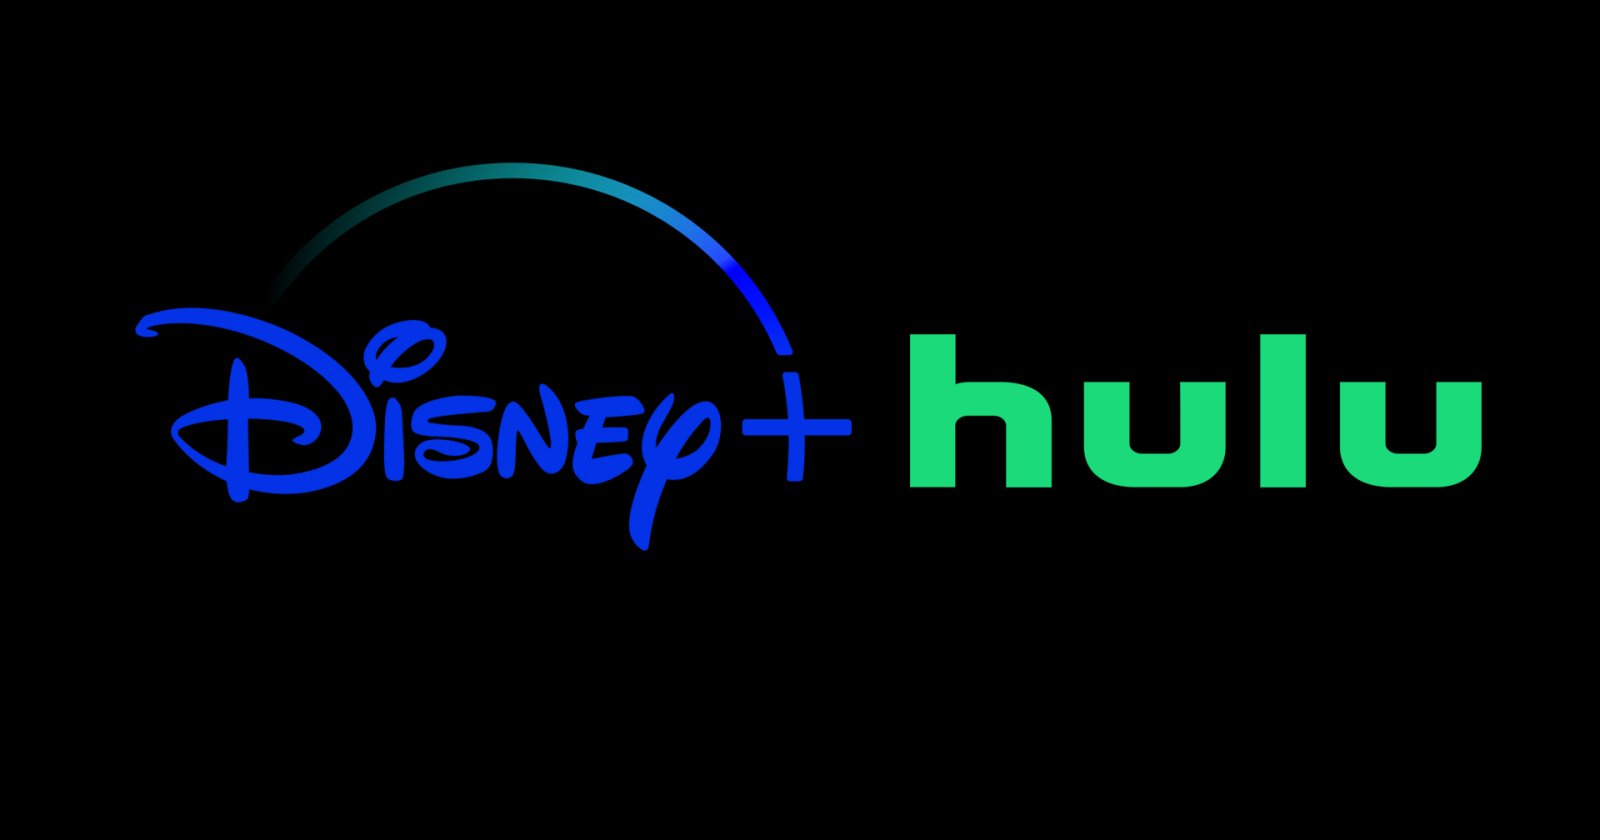 Disney เตรียมขยายบริการสตรีมมิง เข้าซื้อหุ้นทั้งหมดของ Hulu มูลค่า 8,600 ล้านเหรียญ